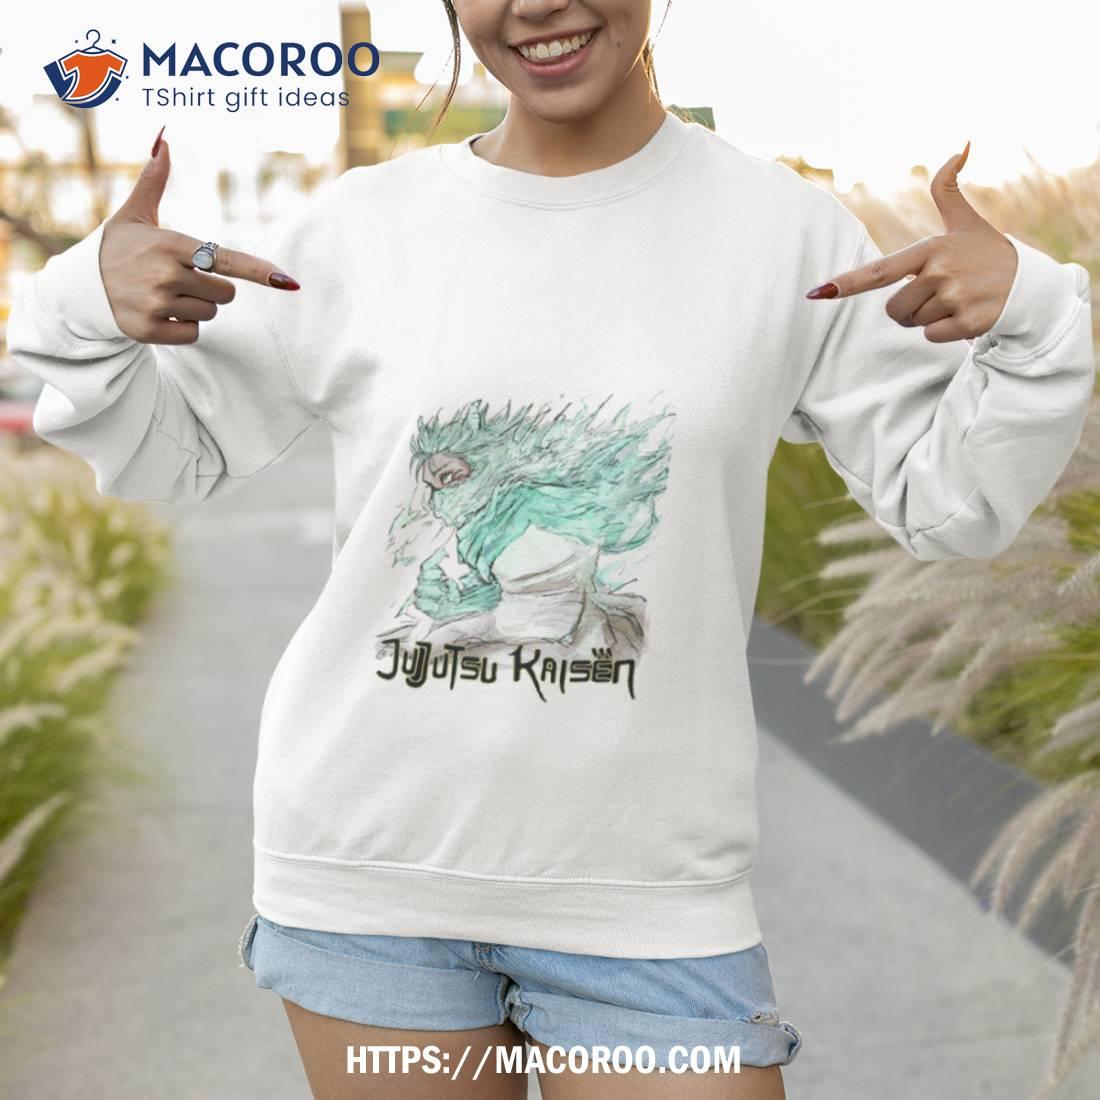 Magical Senpai Shirt Essential T-Shirt for Sale by [-A